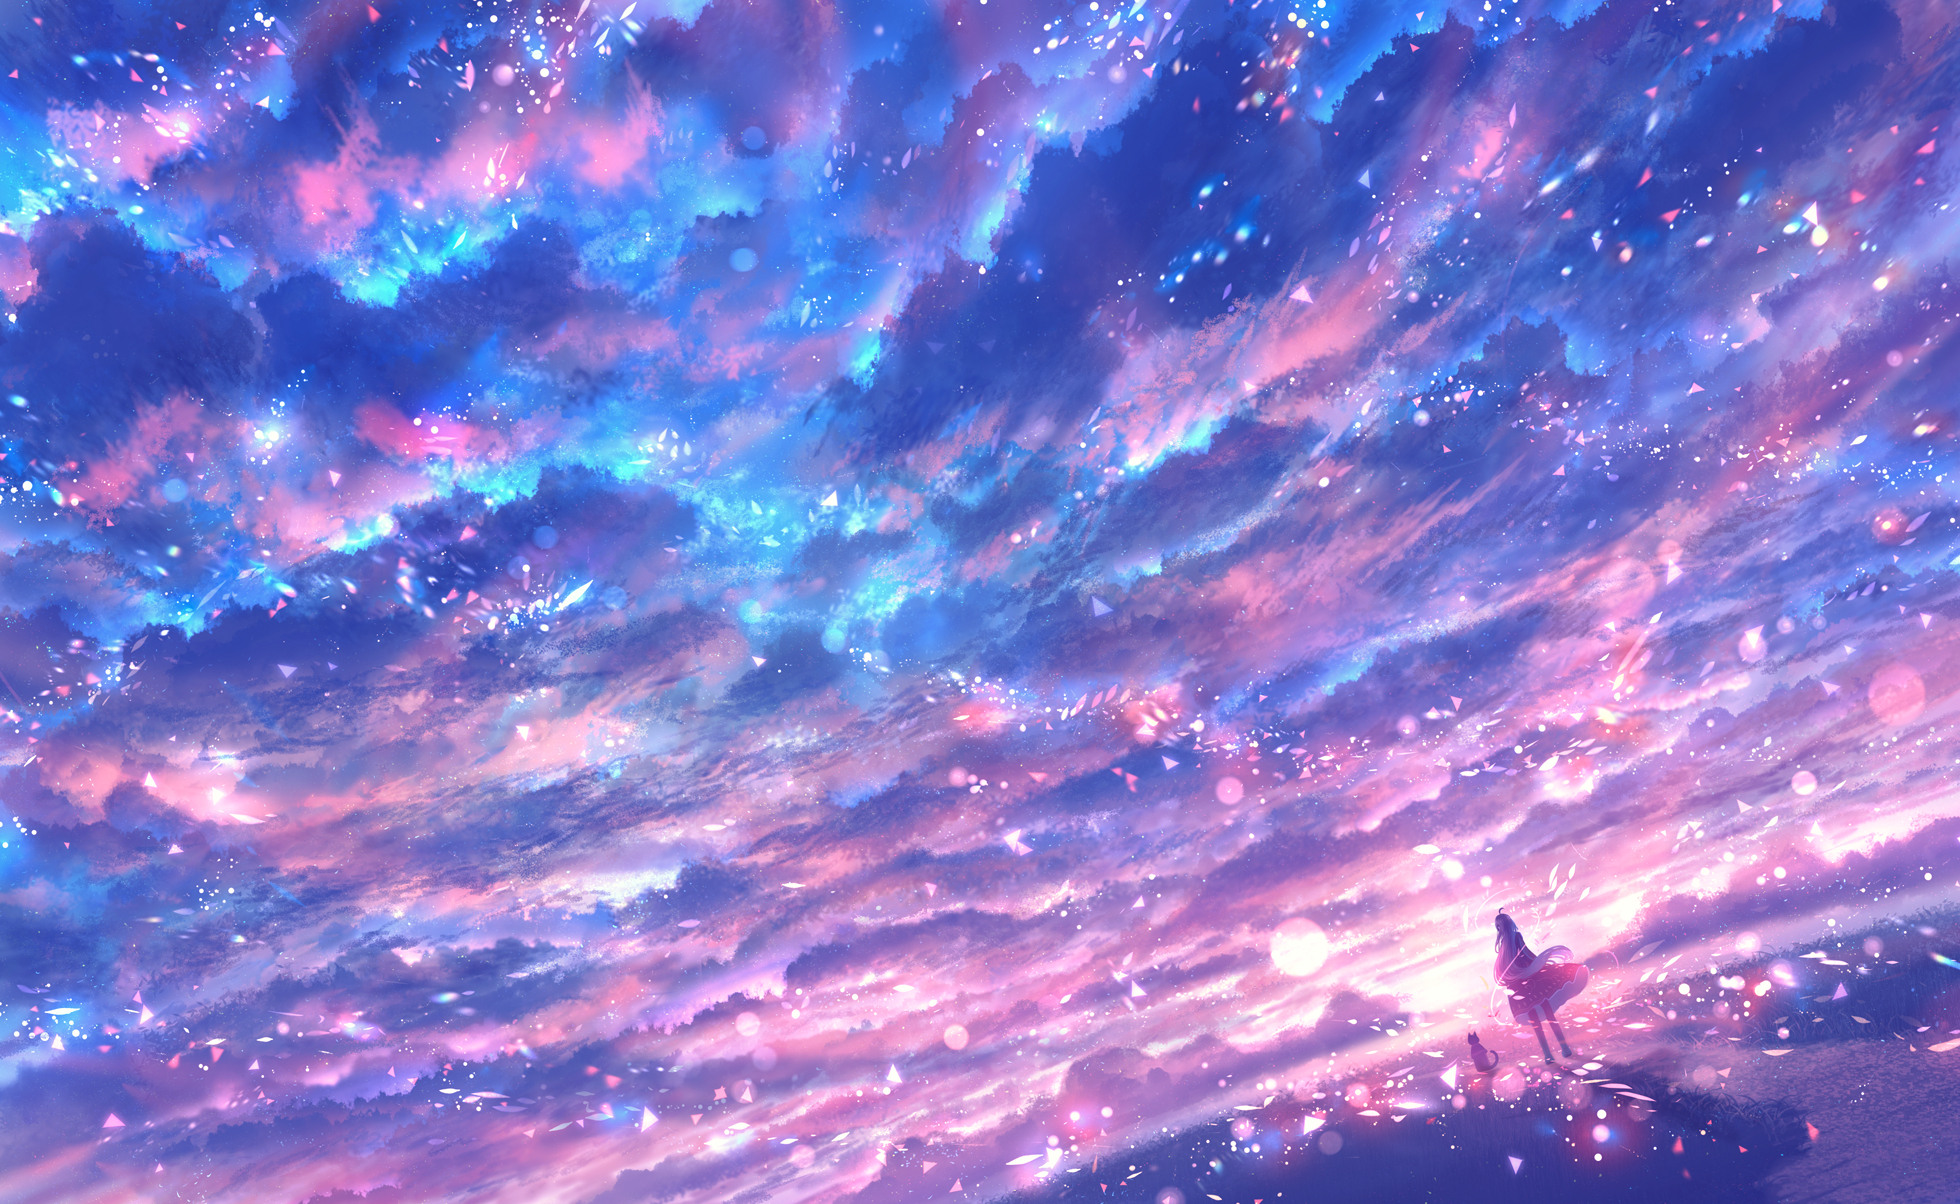 Anime Skybox #Textures#Skybox#Anime#Sky